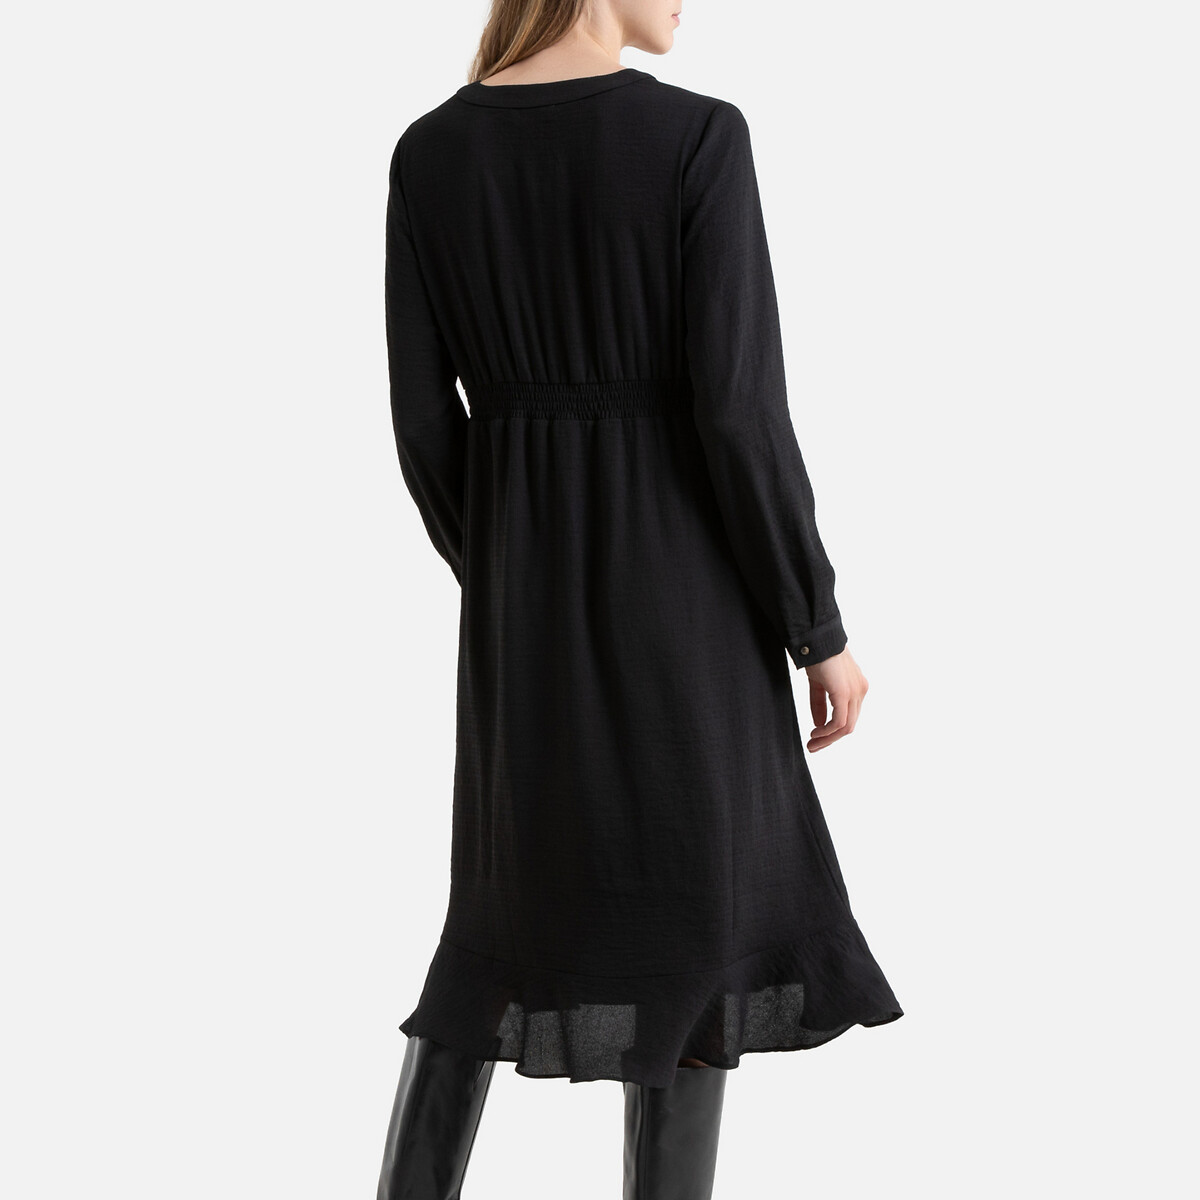 Платье La Redoute Короткое на пуговицах длинные рукава 3(L) черный, размер 3(L) Короткое на пуговицах длинные рукава 3(L) черный - фото 4